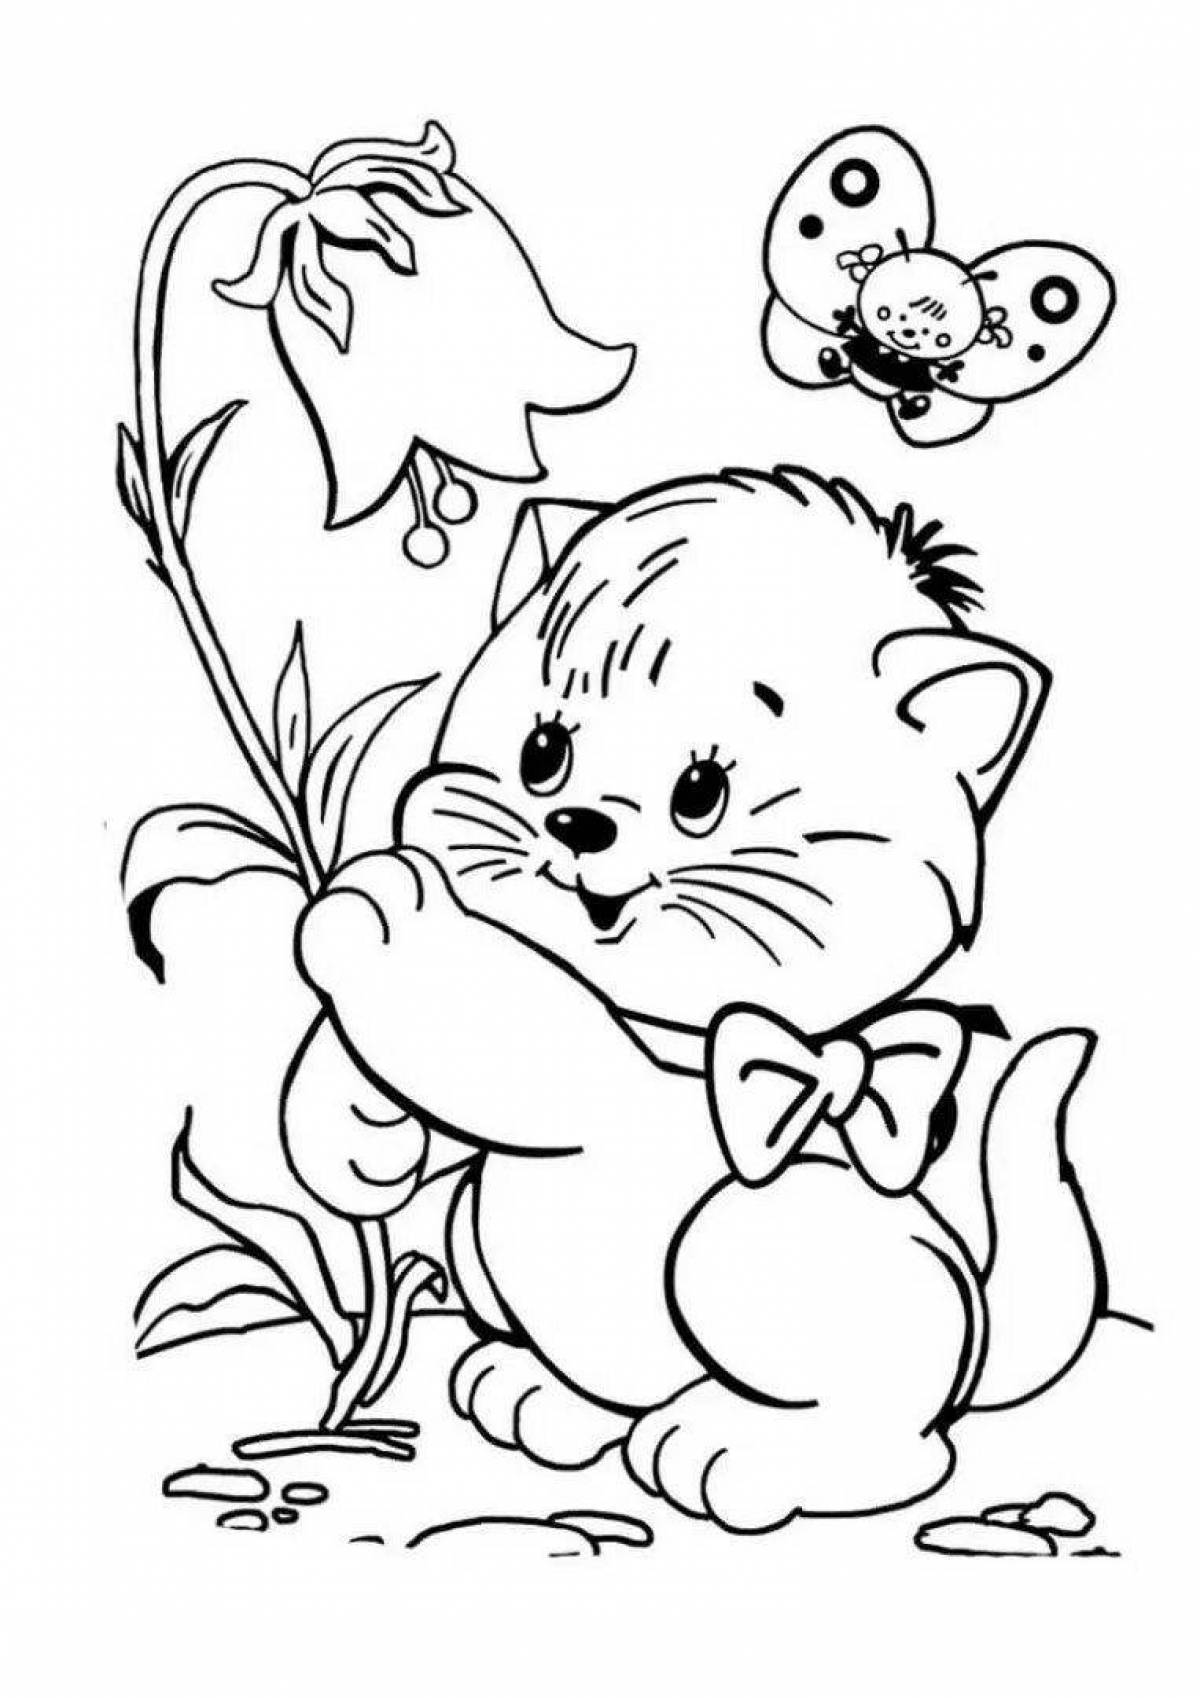 Раскраска котенок для детей 4 5 лет. Раскраски для детей. Рисунки для разукрашивания. Раскраска котик с цветами. Котенок. Раскраска.